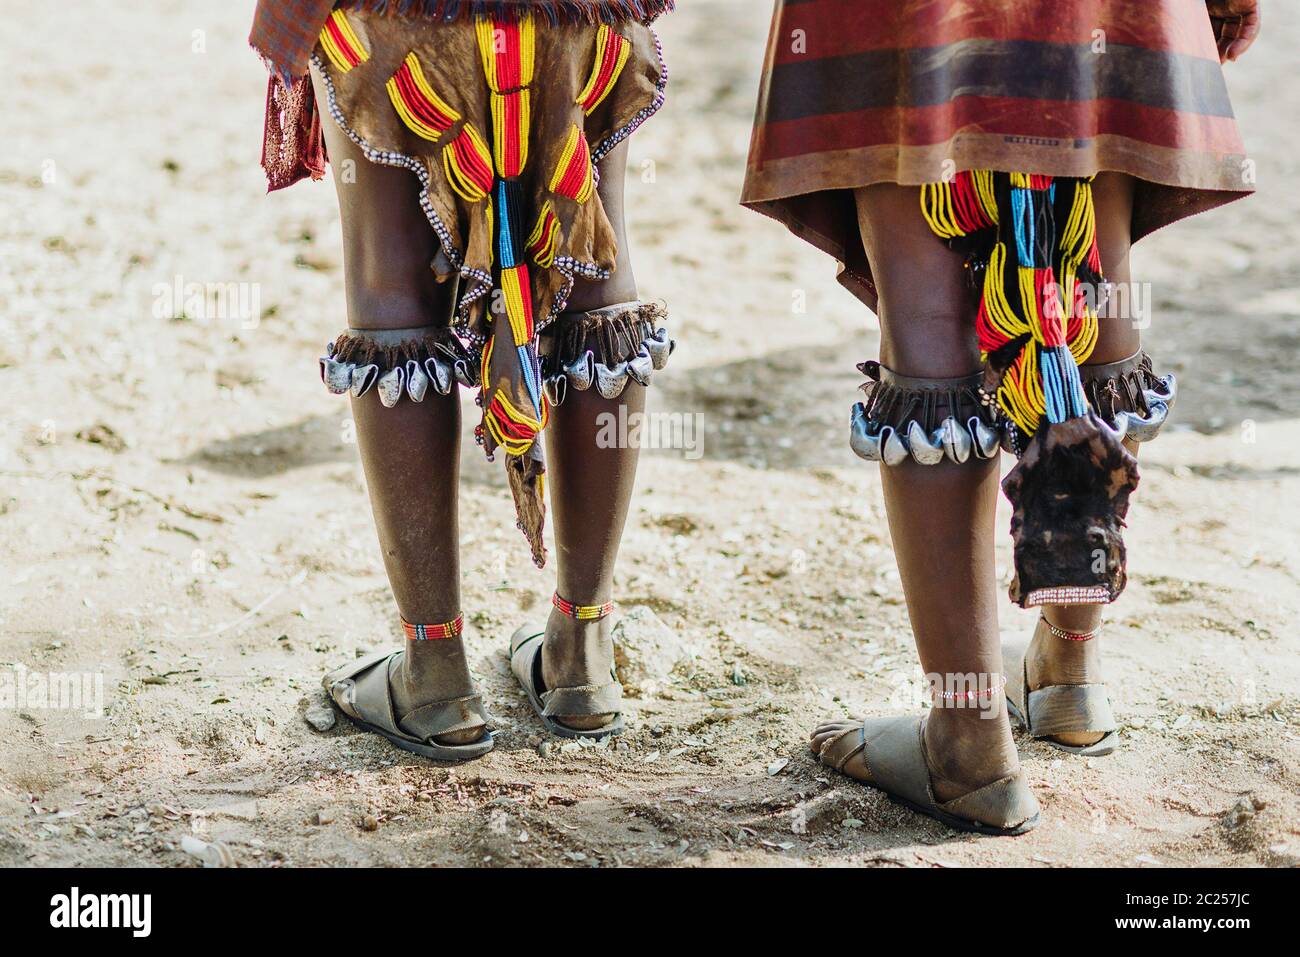 La cérémonie de saut de taureau par les membres non identifiés de la tribu Hamer dans la vallée d'Omo, en Éthiopie Banque D'Images